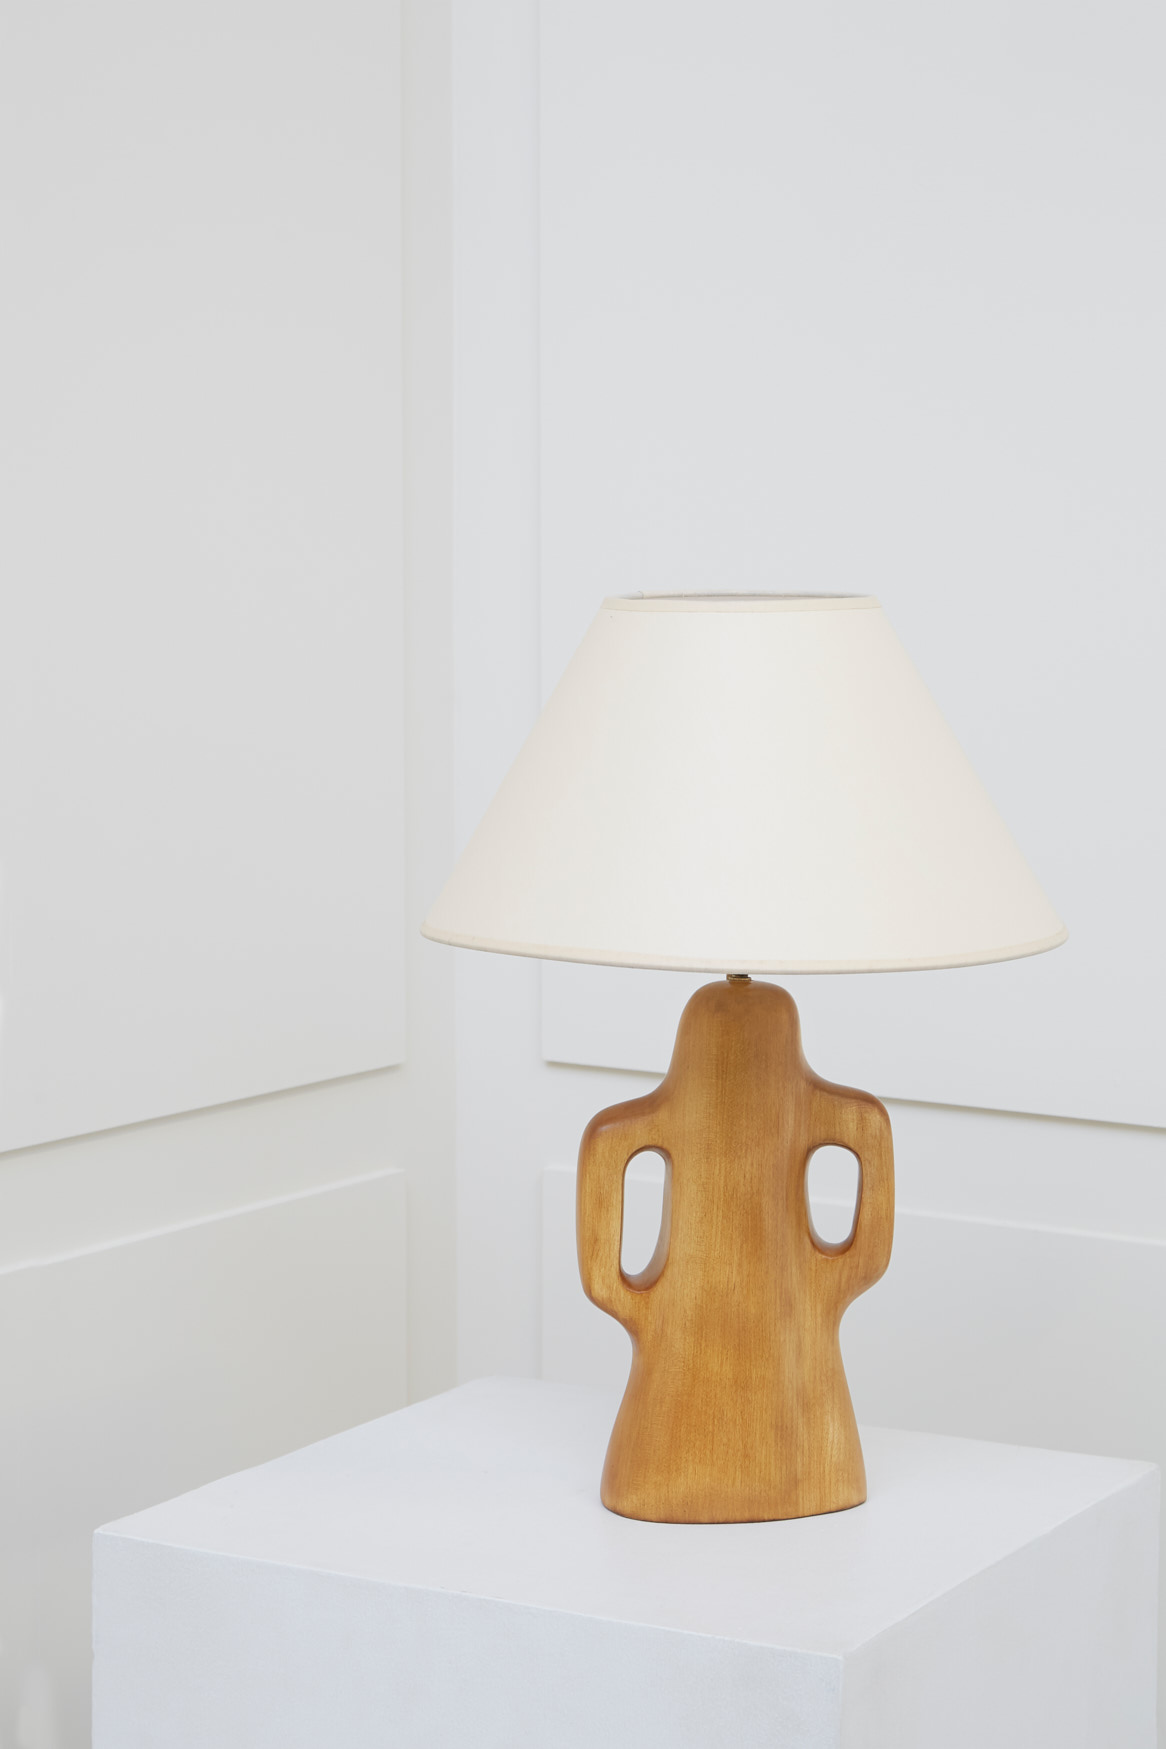 Alexandre Noll, Cherry wood lamp, vue 01